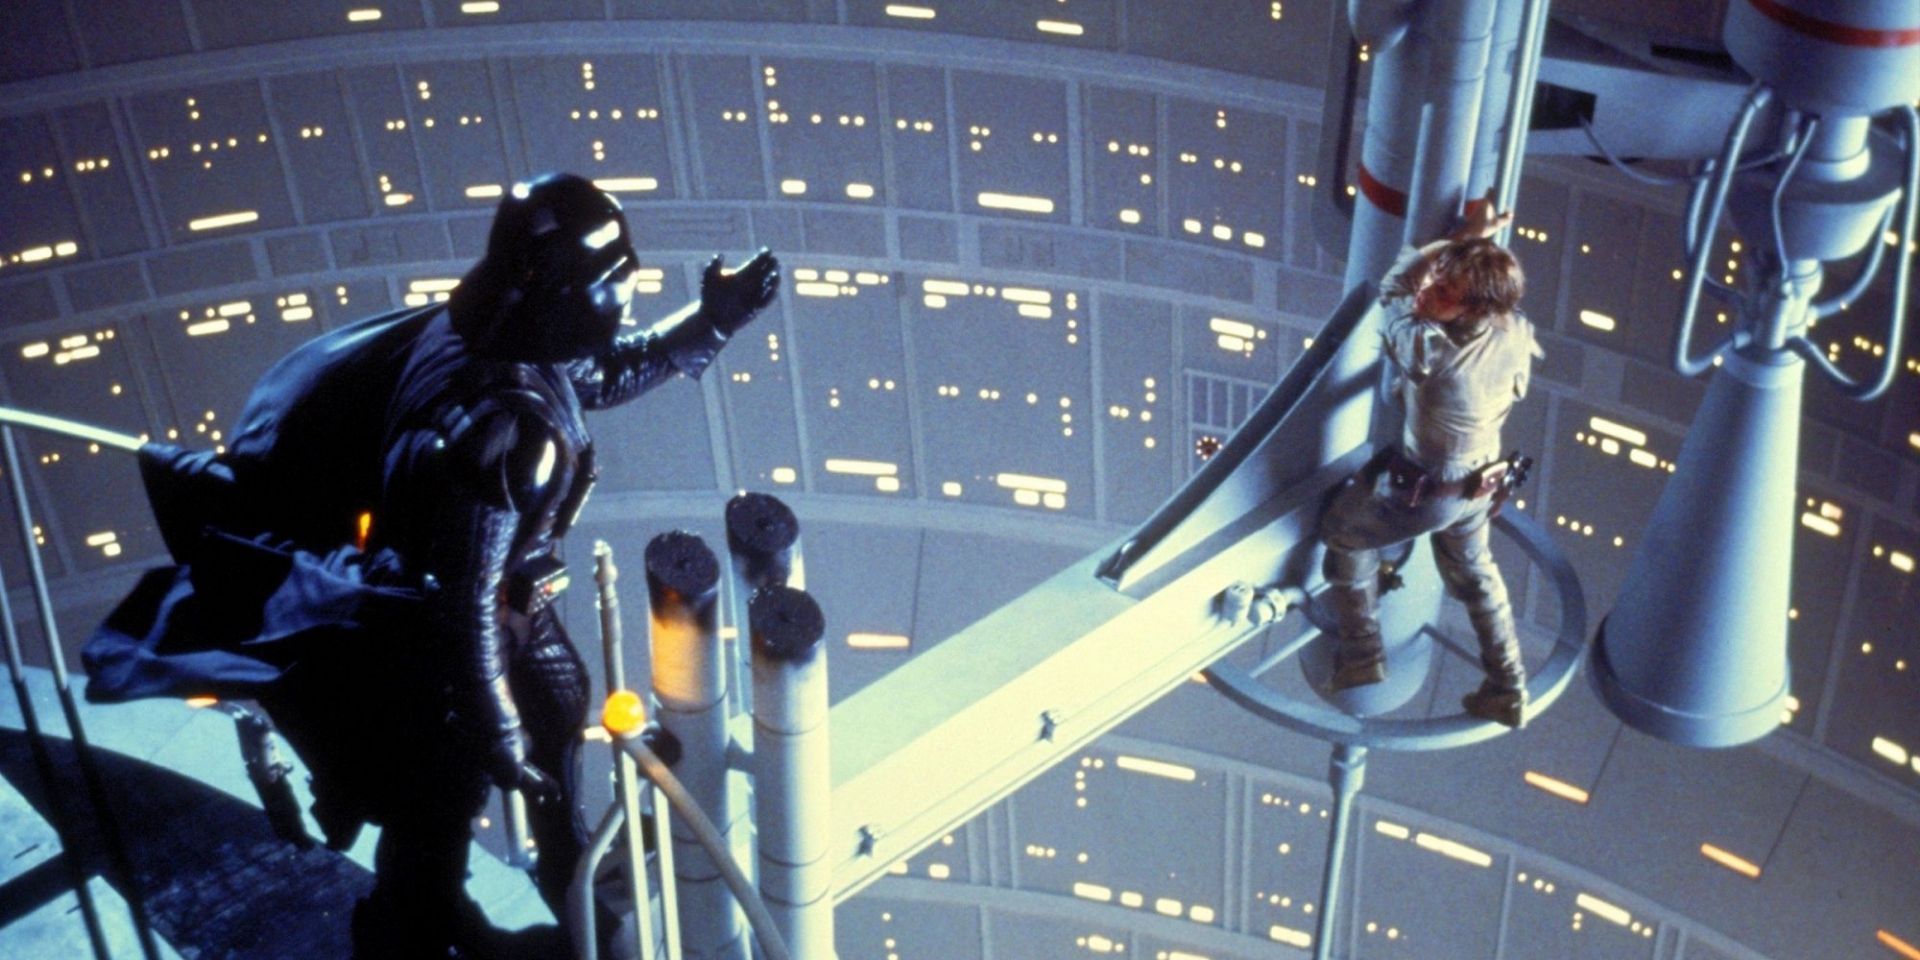 Darth Vader vs Luke in Star Wars Empire Strikes Back